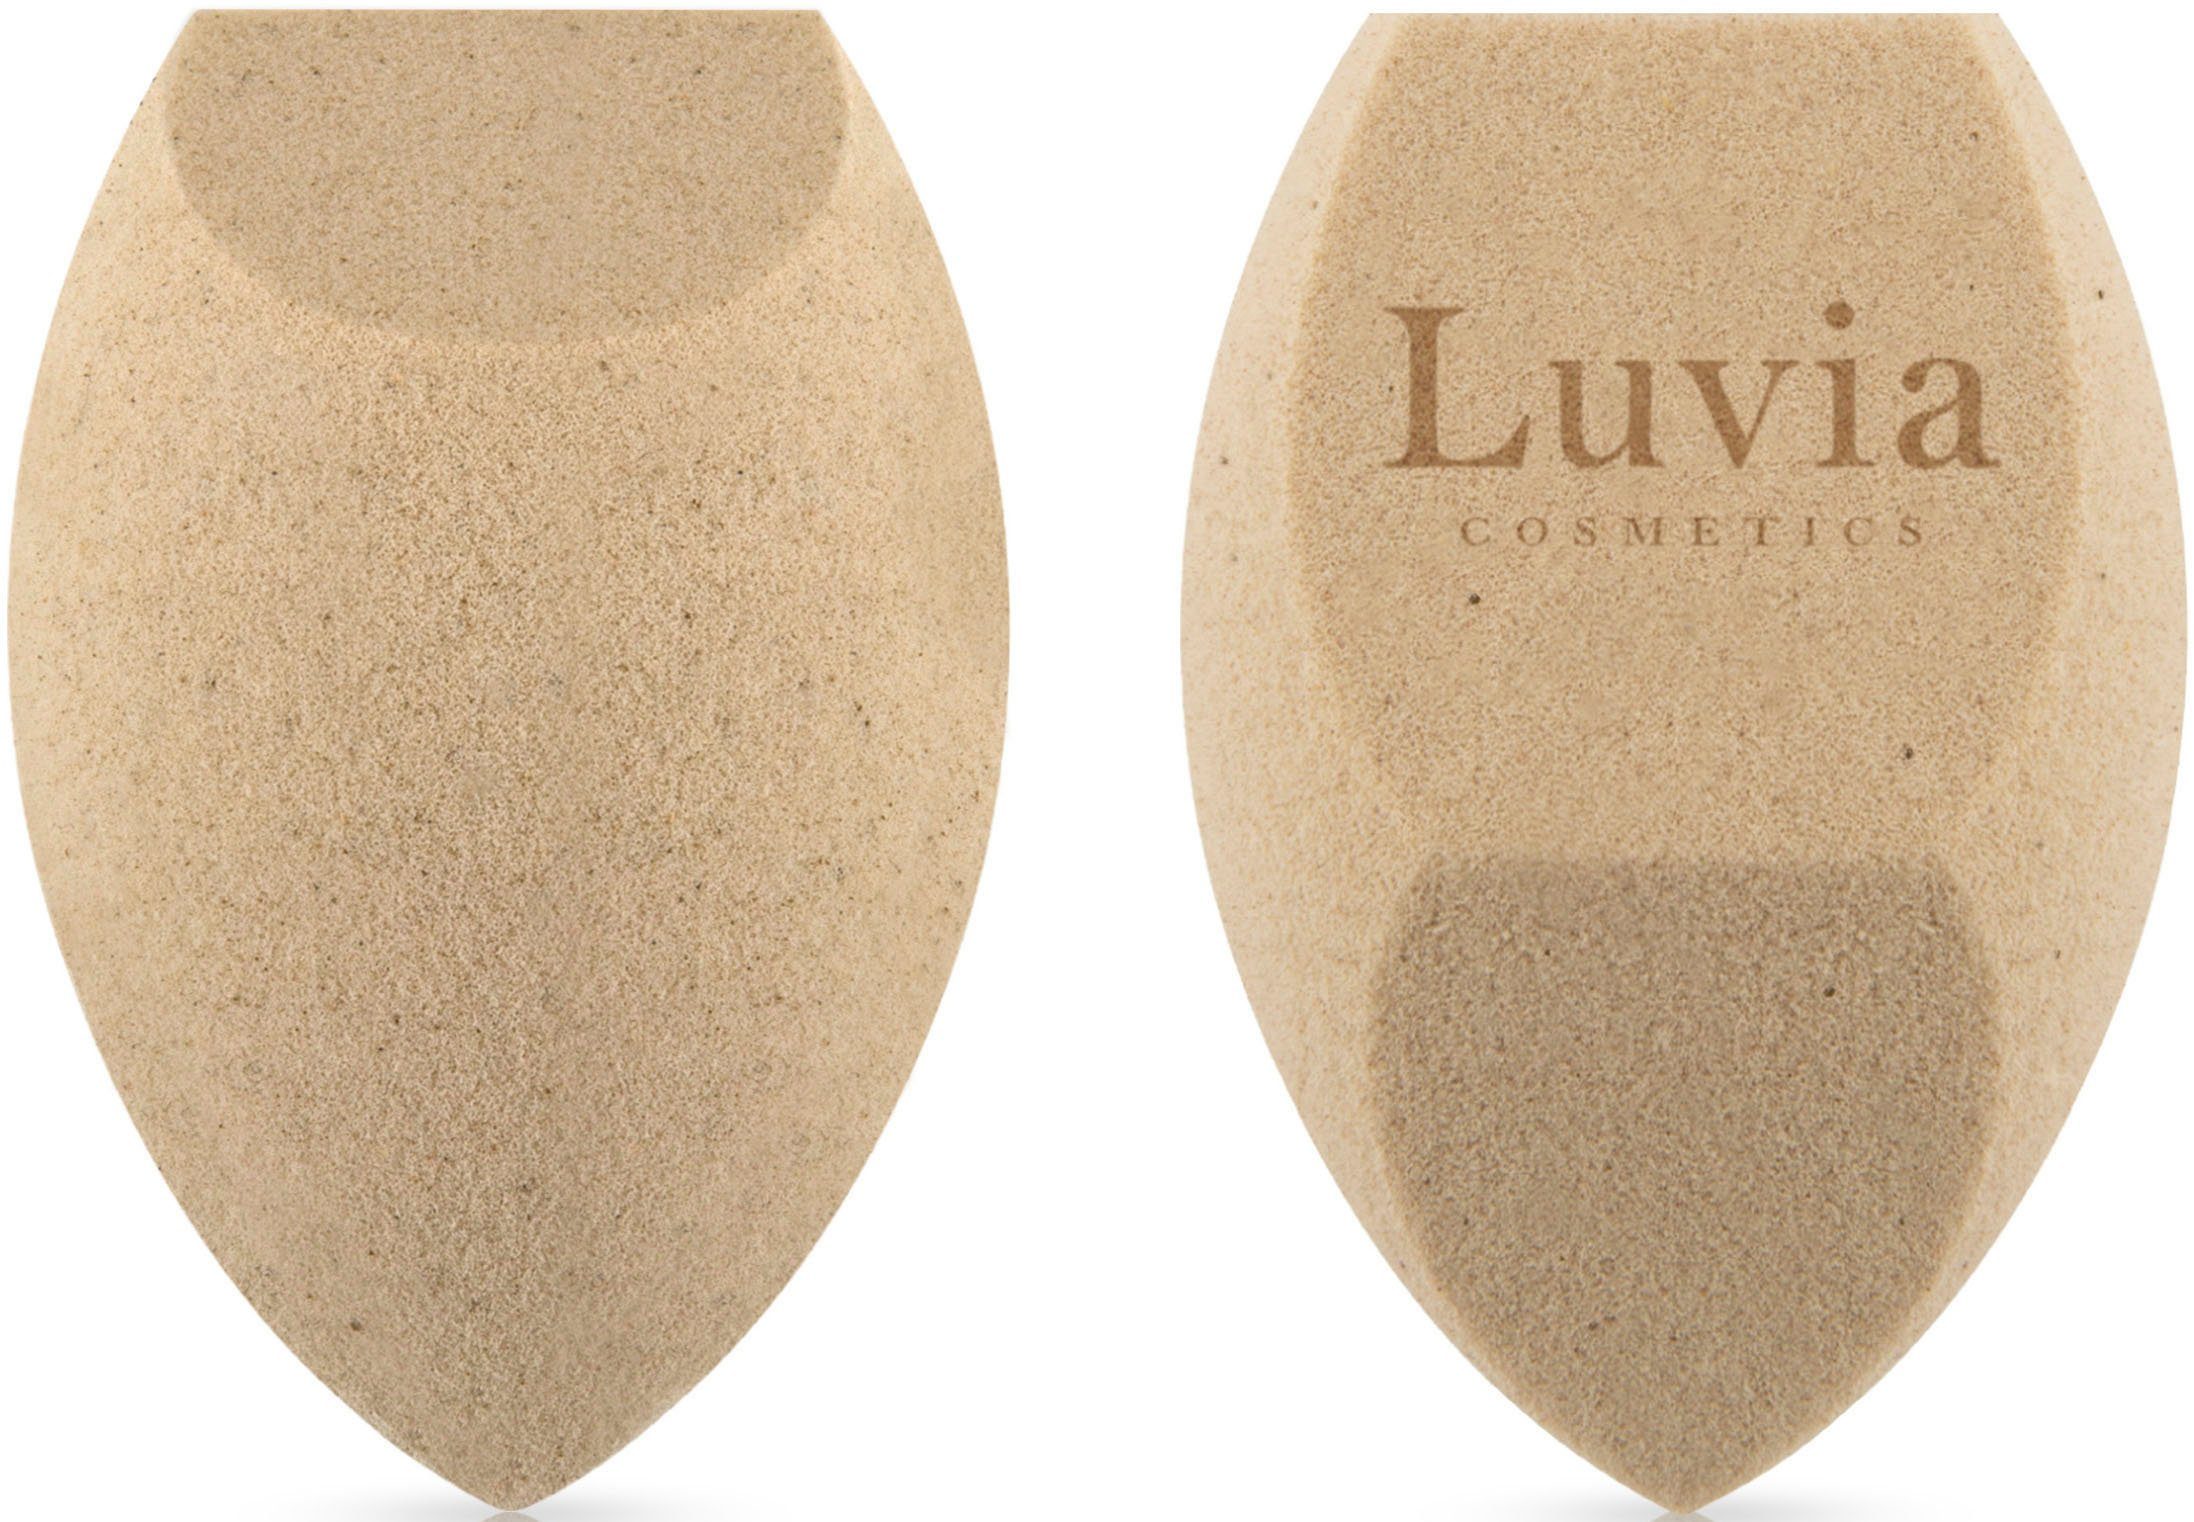 Luvia Cosmetics Make-up Schwamm Sponge Feinporig Hautbild, hautfreundlicher tlg., mit für Schwamm Verbrauch Make-up Tee-Extrakt natürliches Set, wertvollen 2 Make-up Packung, Tea geringer Tee-Bestandteilen, mit